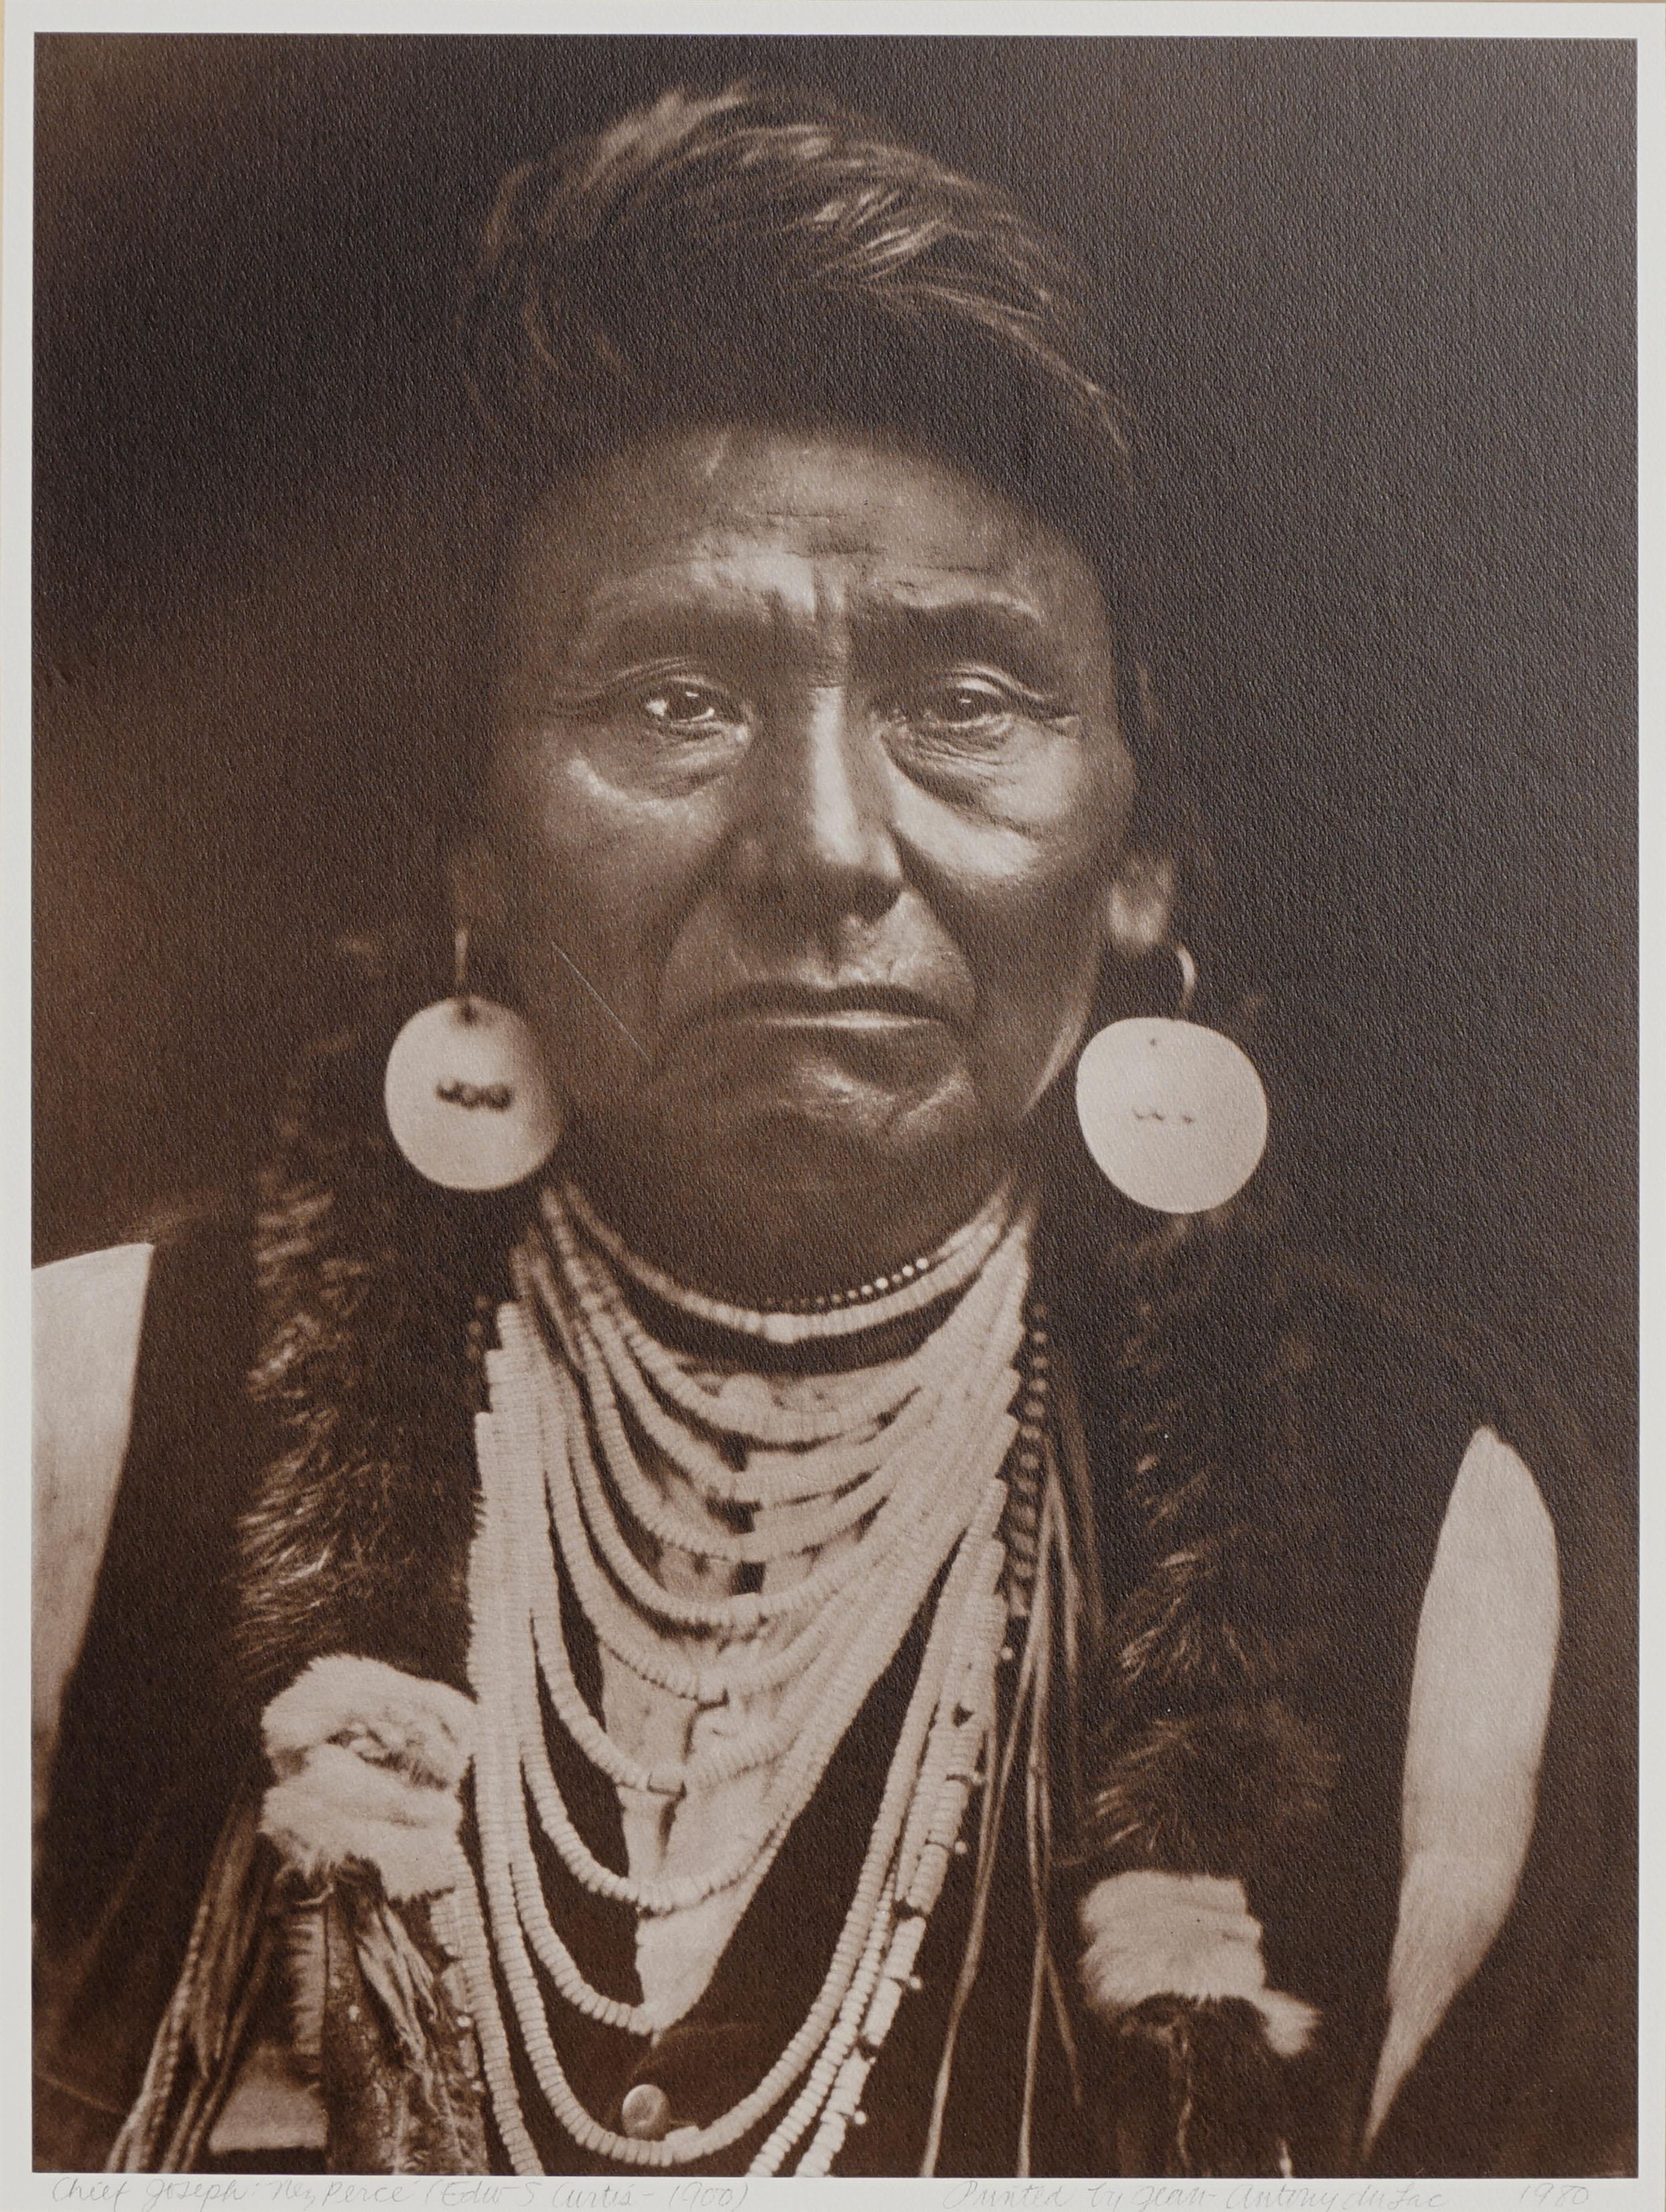 Nez Perce Chief Joseph - Photograph by Edward Sheriff Curtis